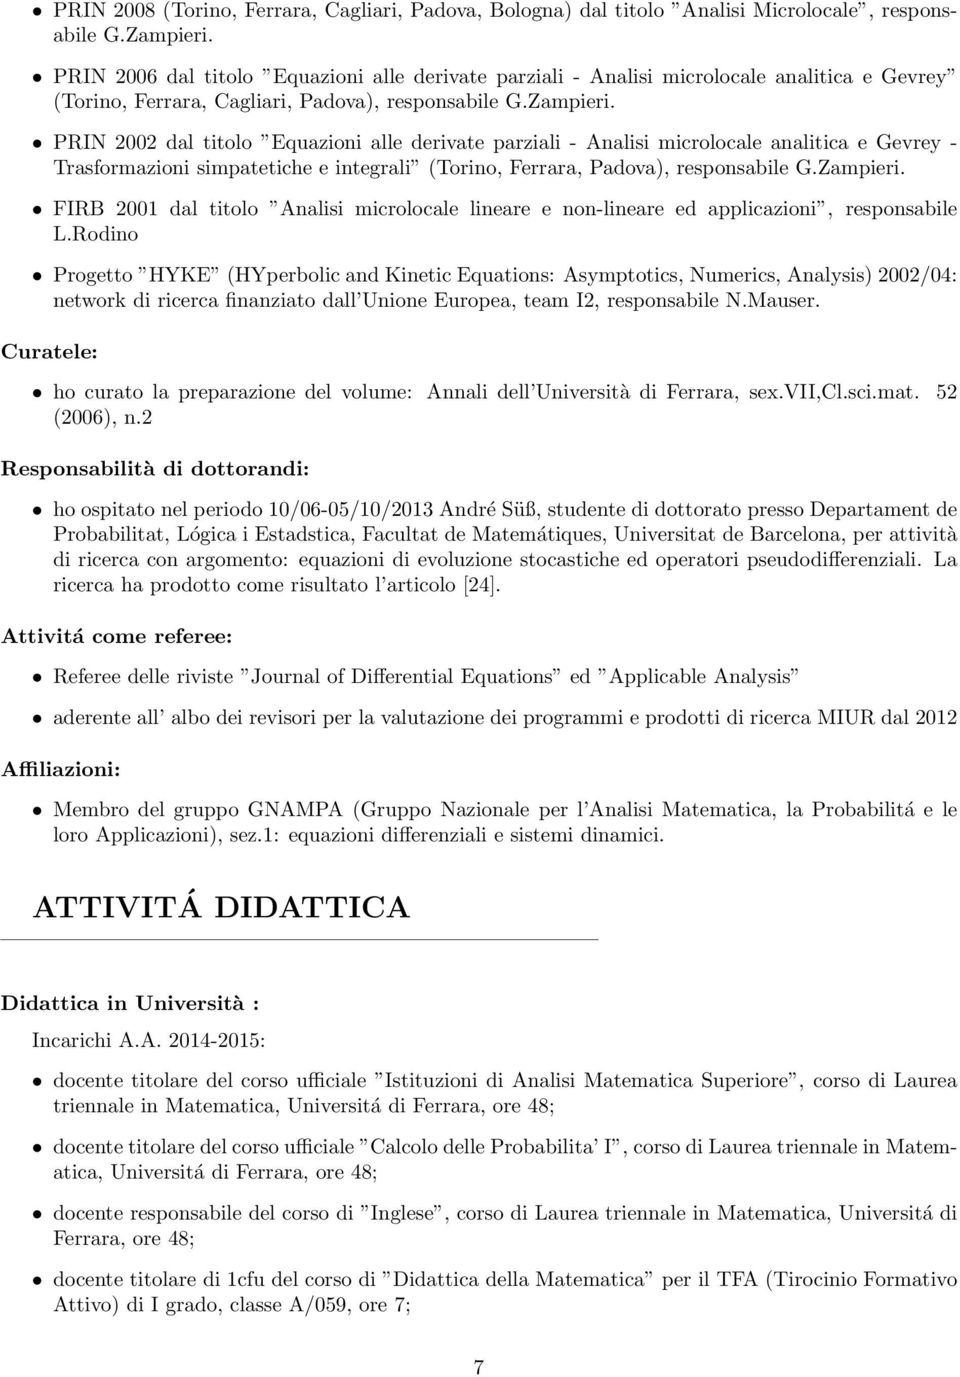 PRIN 2002 dal titolo Equazioni alle derivate parziali - Analisi microlocale analitica e Gevrey - Trasformazioni simpatetiche e integrali (Torino, Ferrara, Padova), responsabile G.Zampieri.